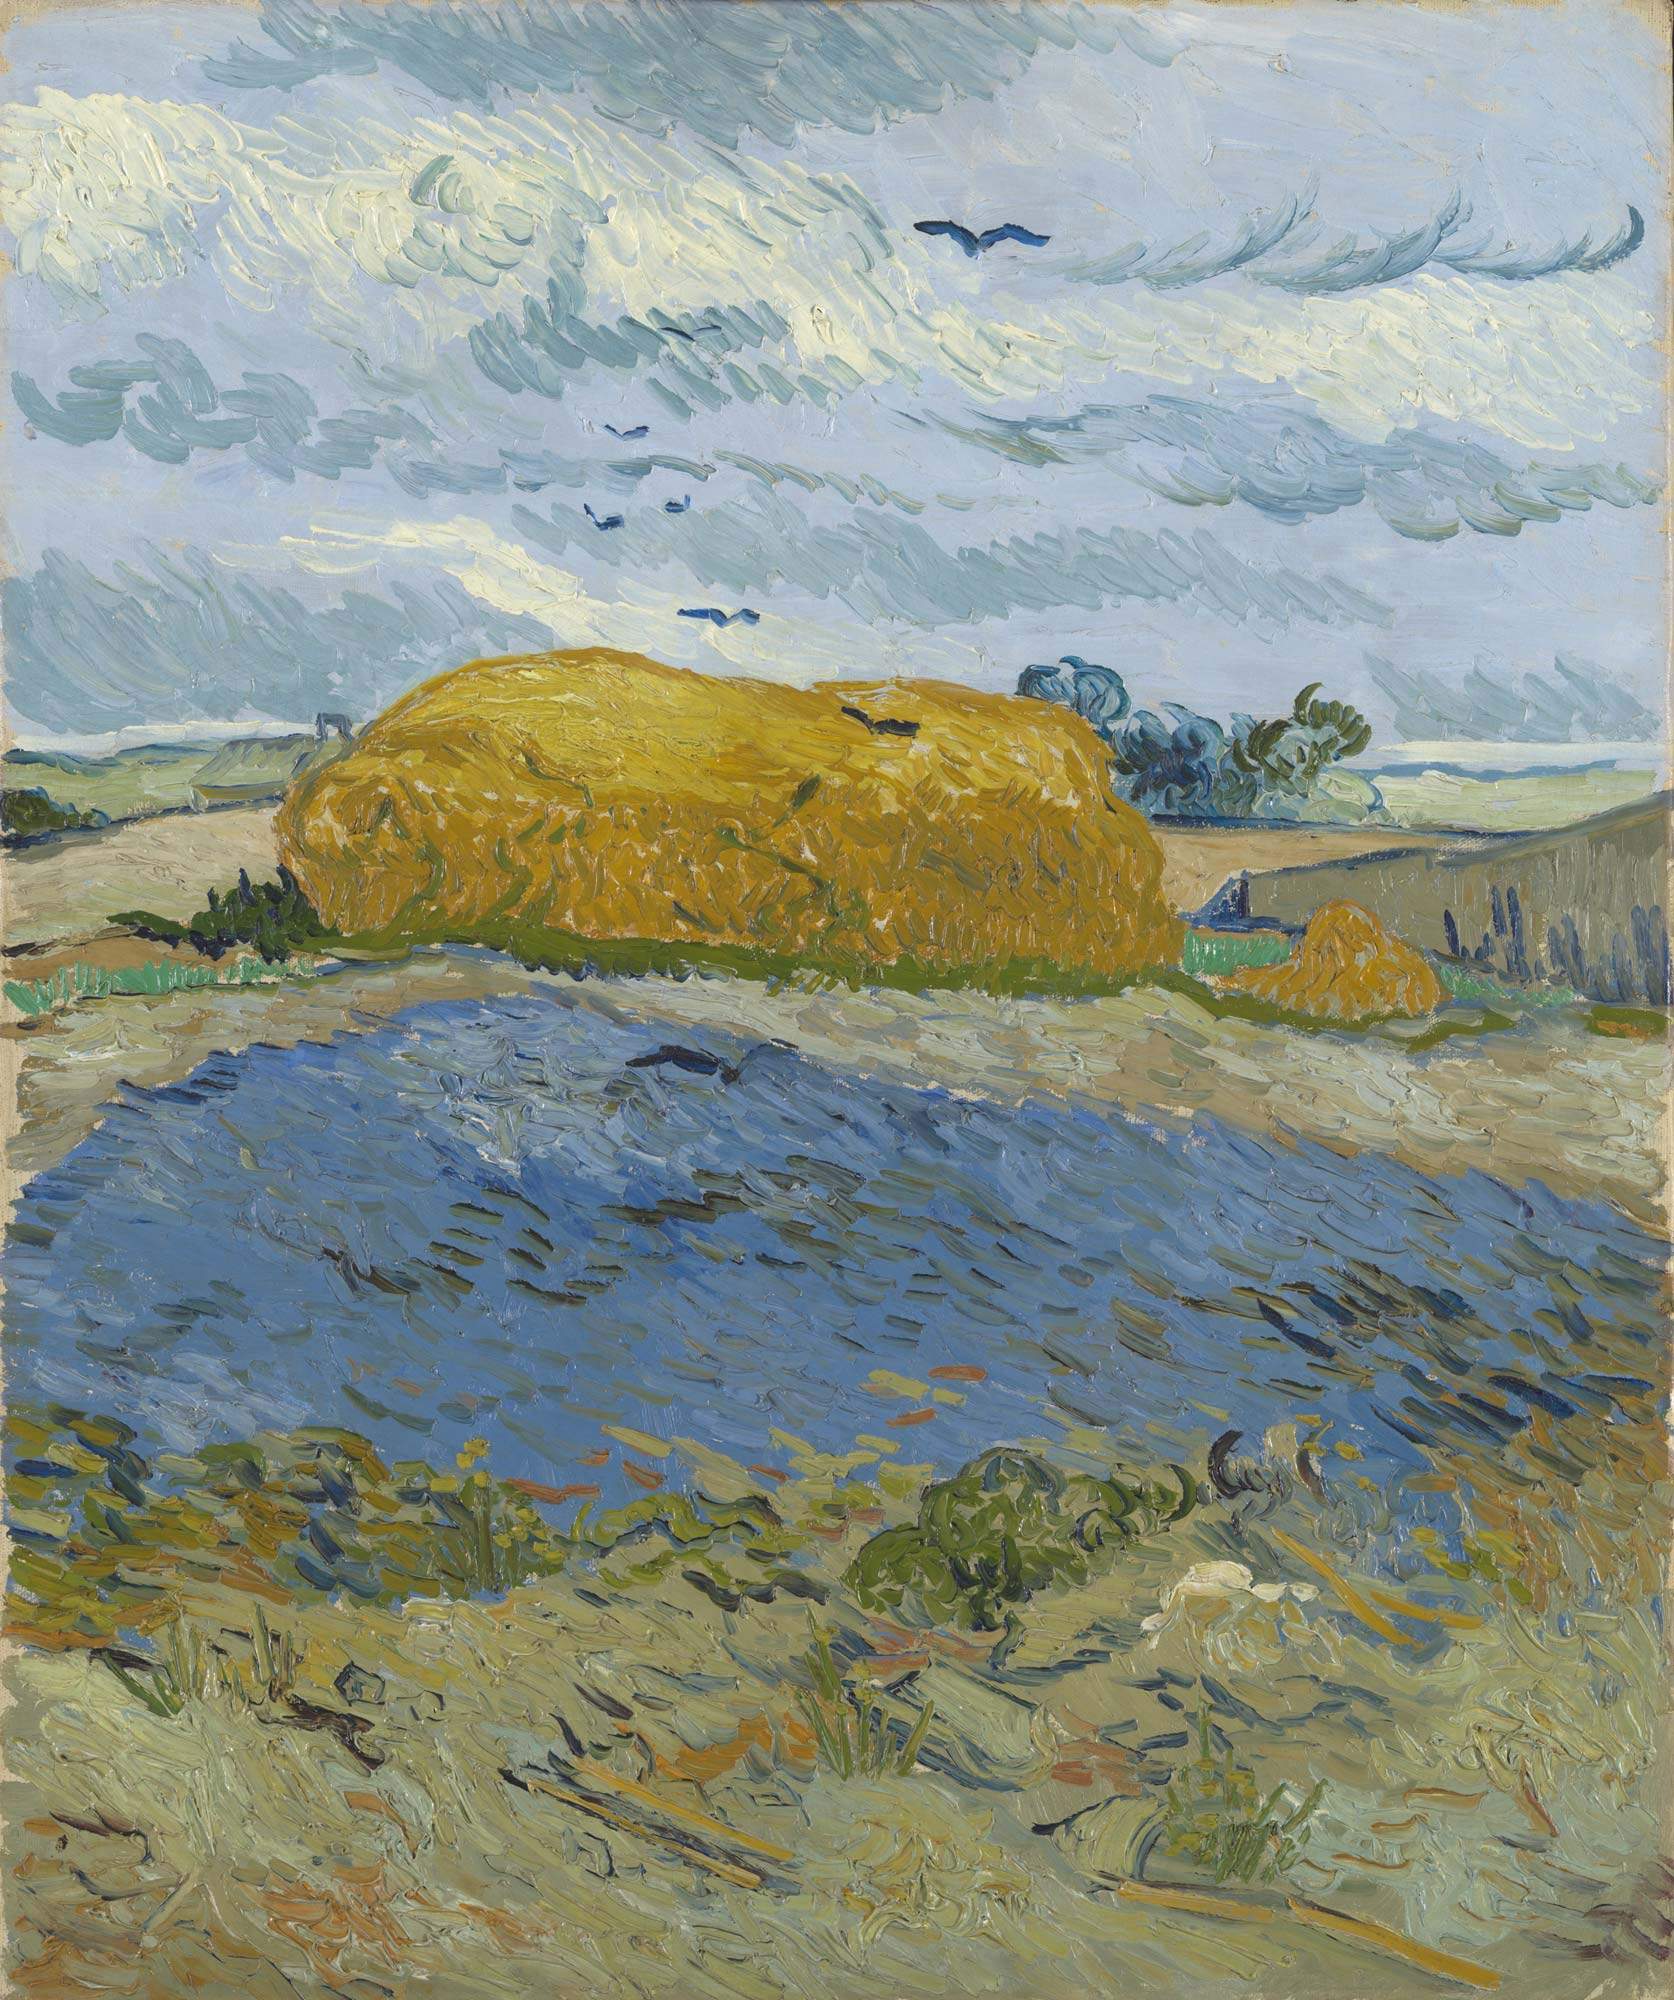 Milano, al Mudec un sorprendente Van Gogh: mostra sulle passioni